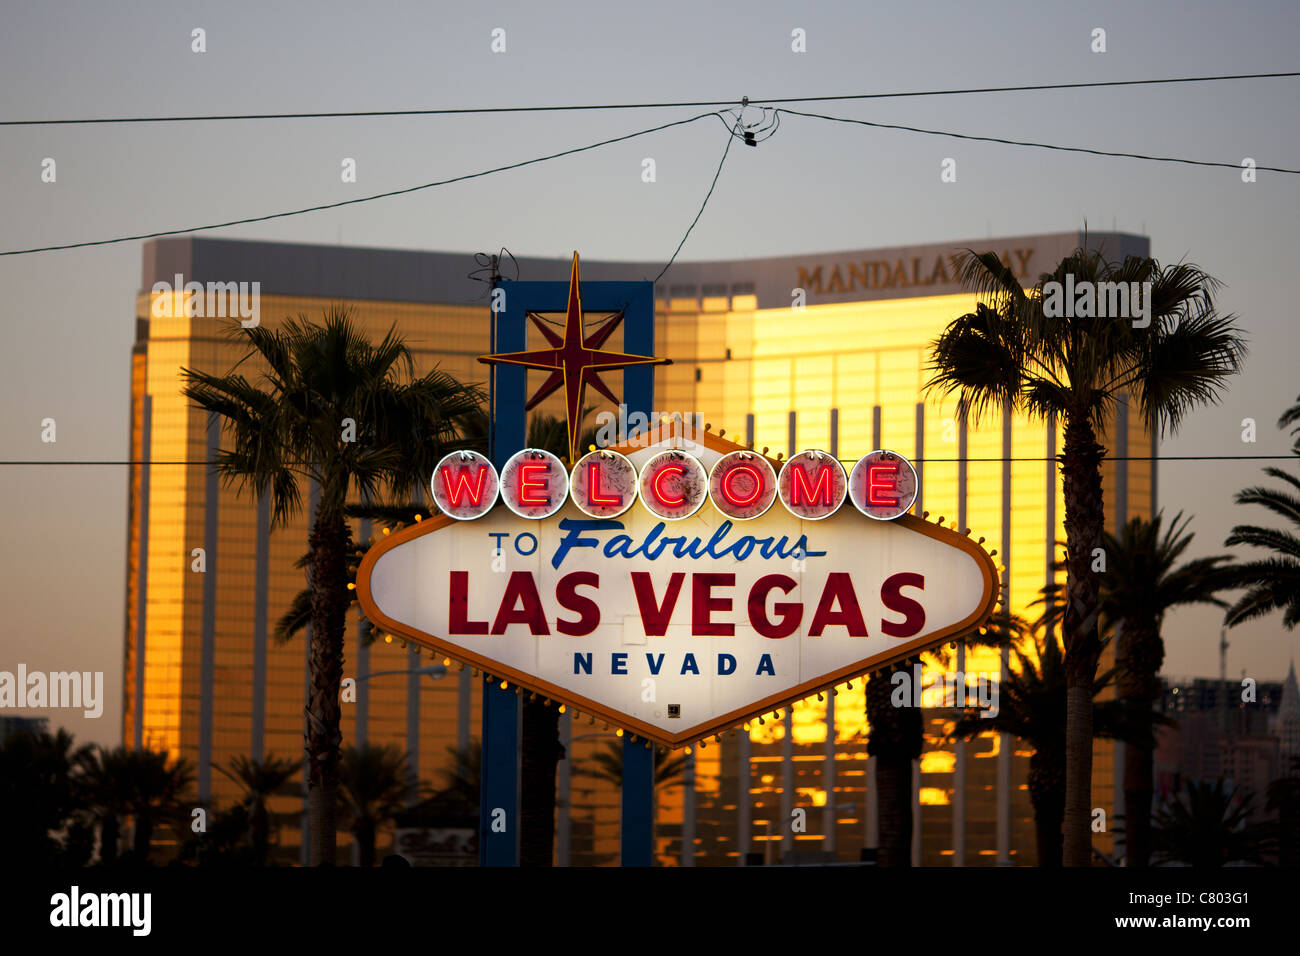 Benvenuto al favoloso cartello Las Vegas. Il Mandalay Bay Resort, luminoso e fuori fuoco al tramonto, mette in evidenza il famoso cartello. Clark County, Nevada, USA. Foto Stock